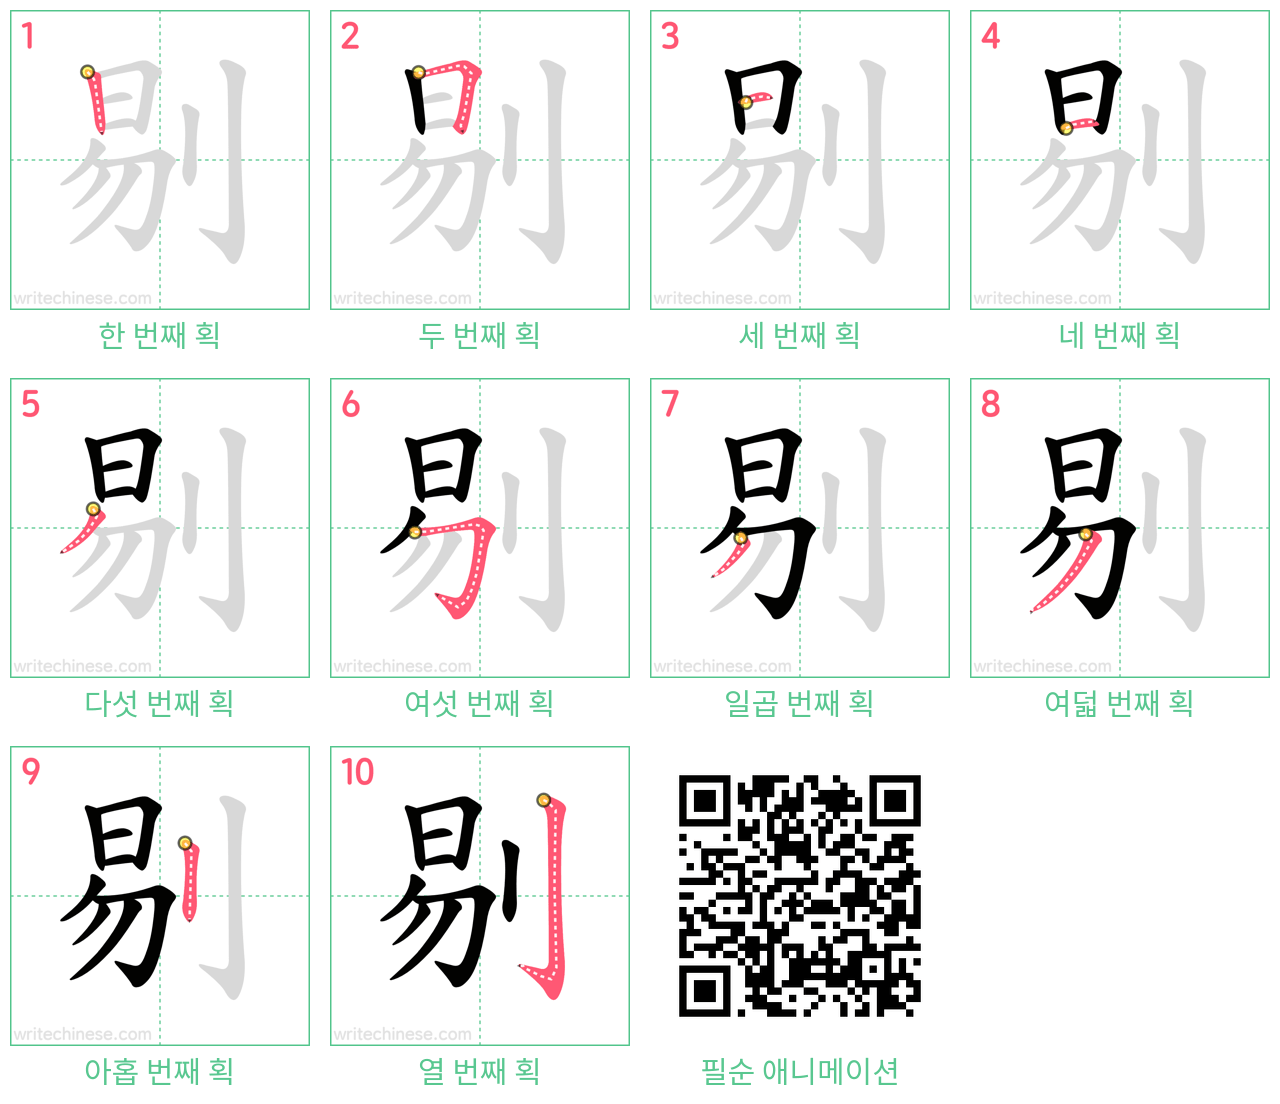 剔 step-by-step stroke order diagrams